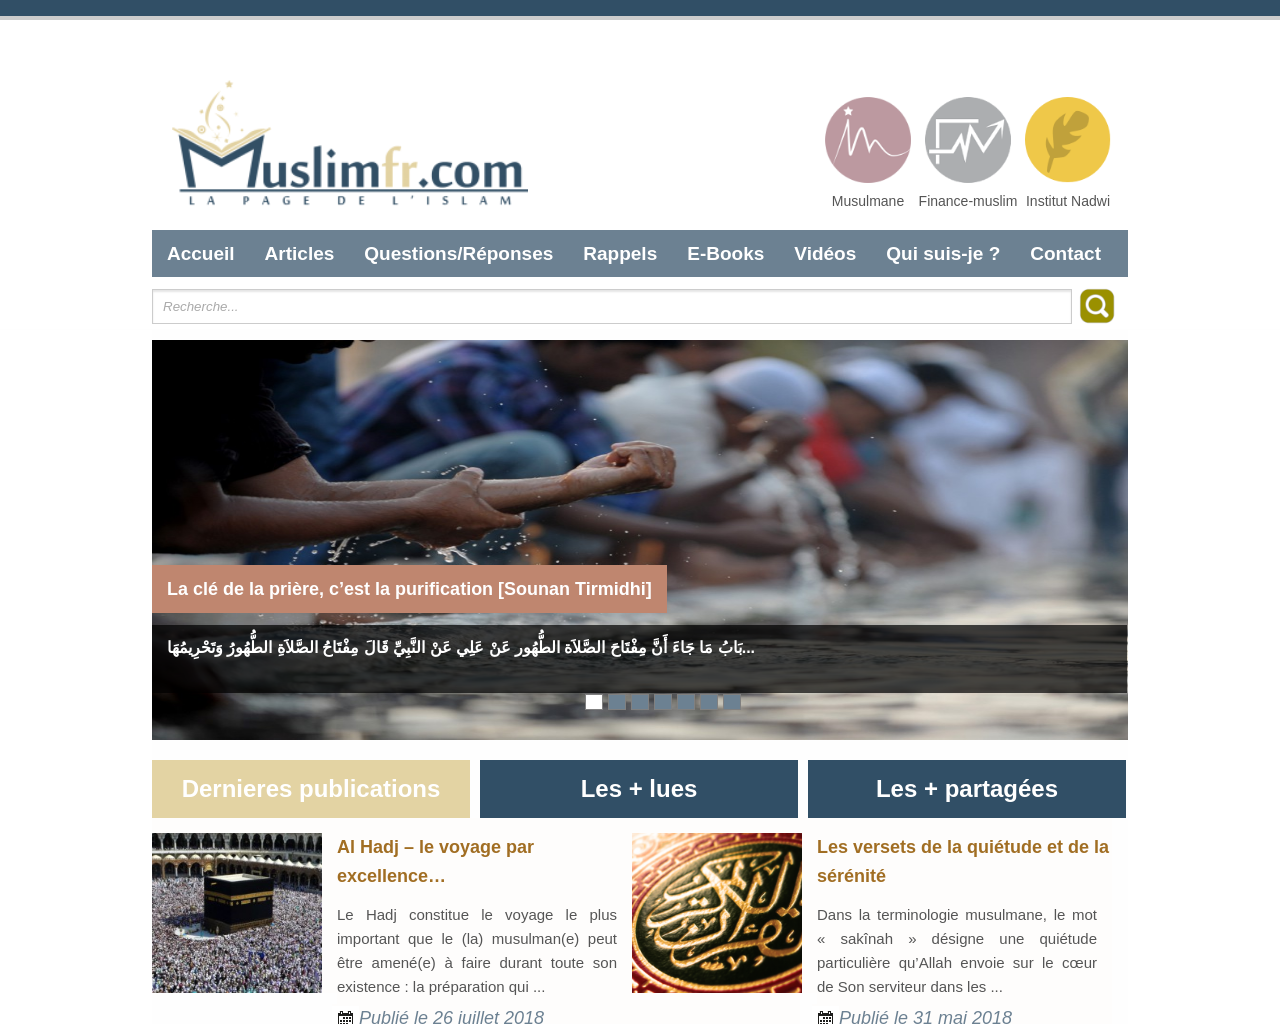 muslimfr.com